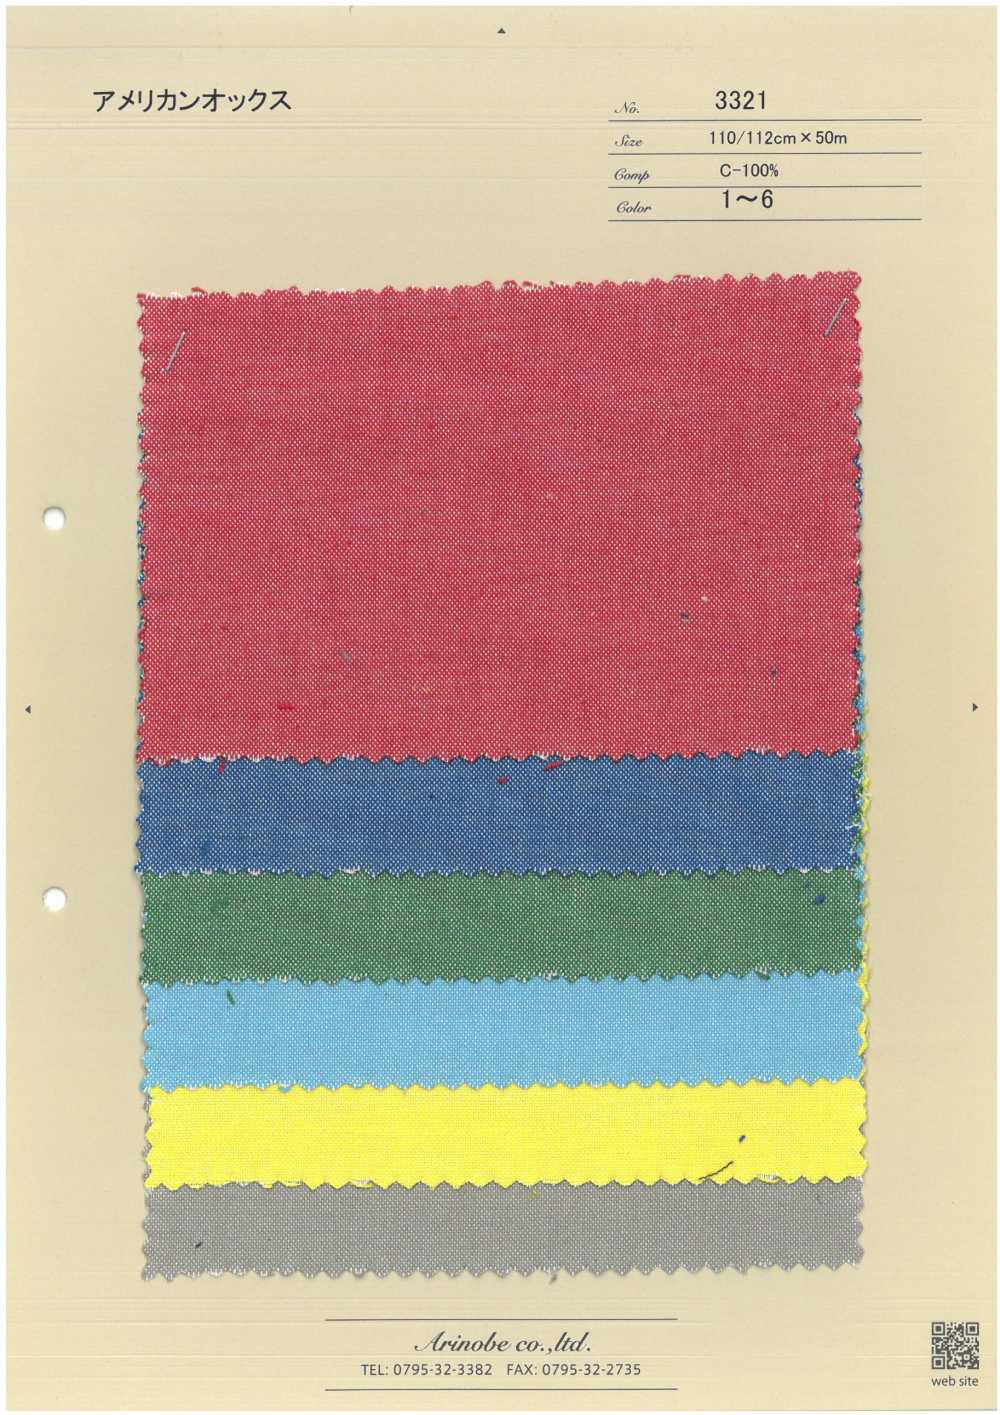 3321 American Oxford[Textile / Fabric] ARINOBE CO., LTD.